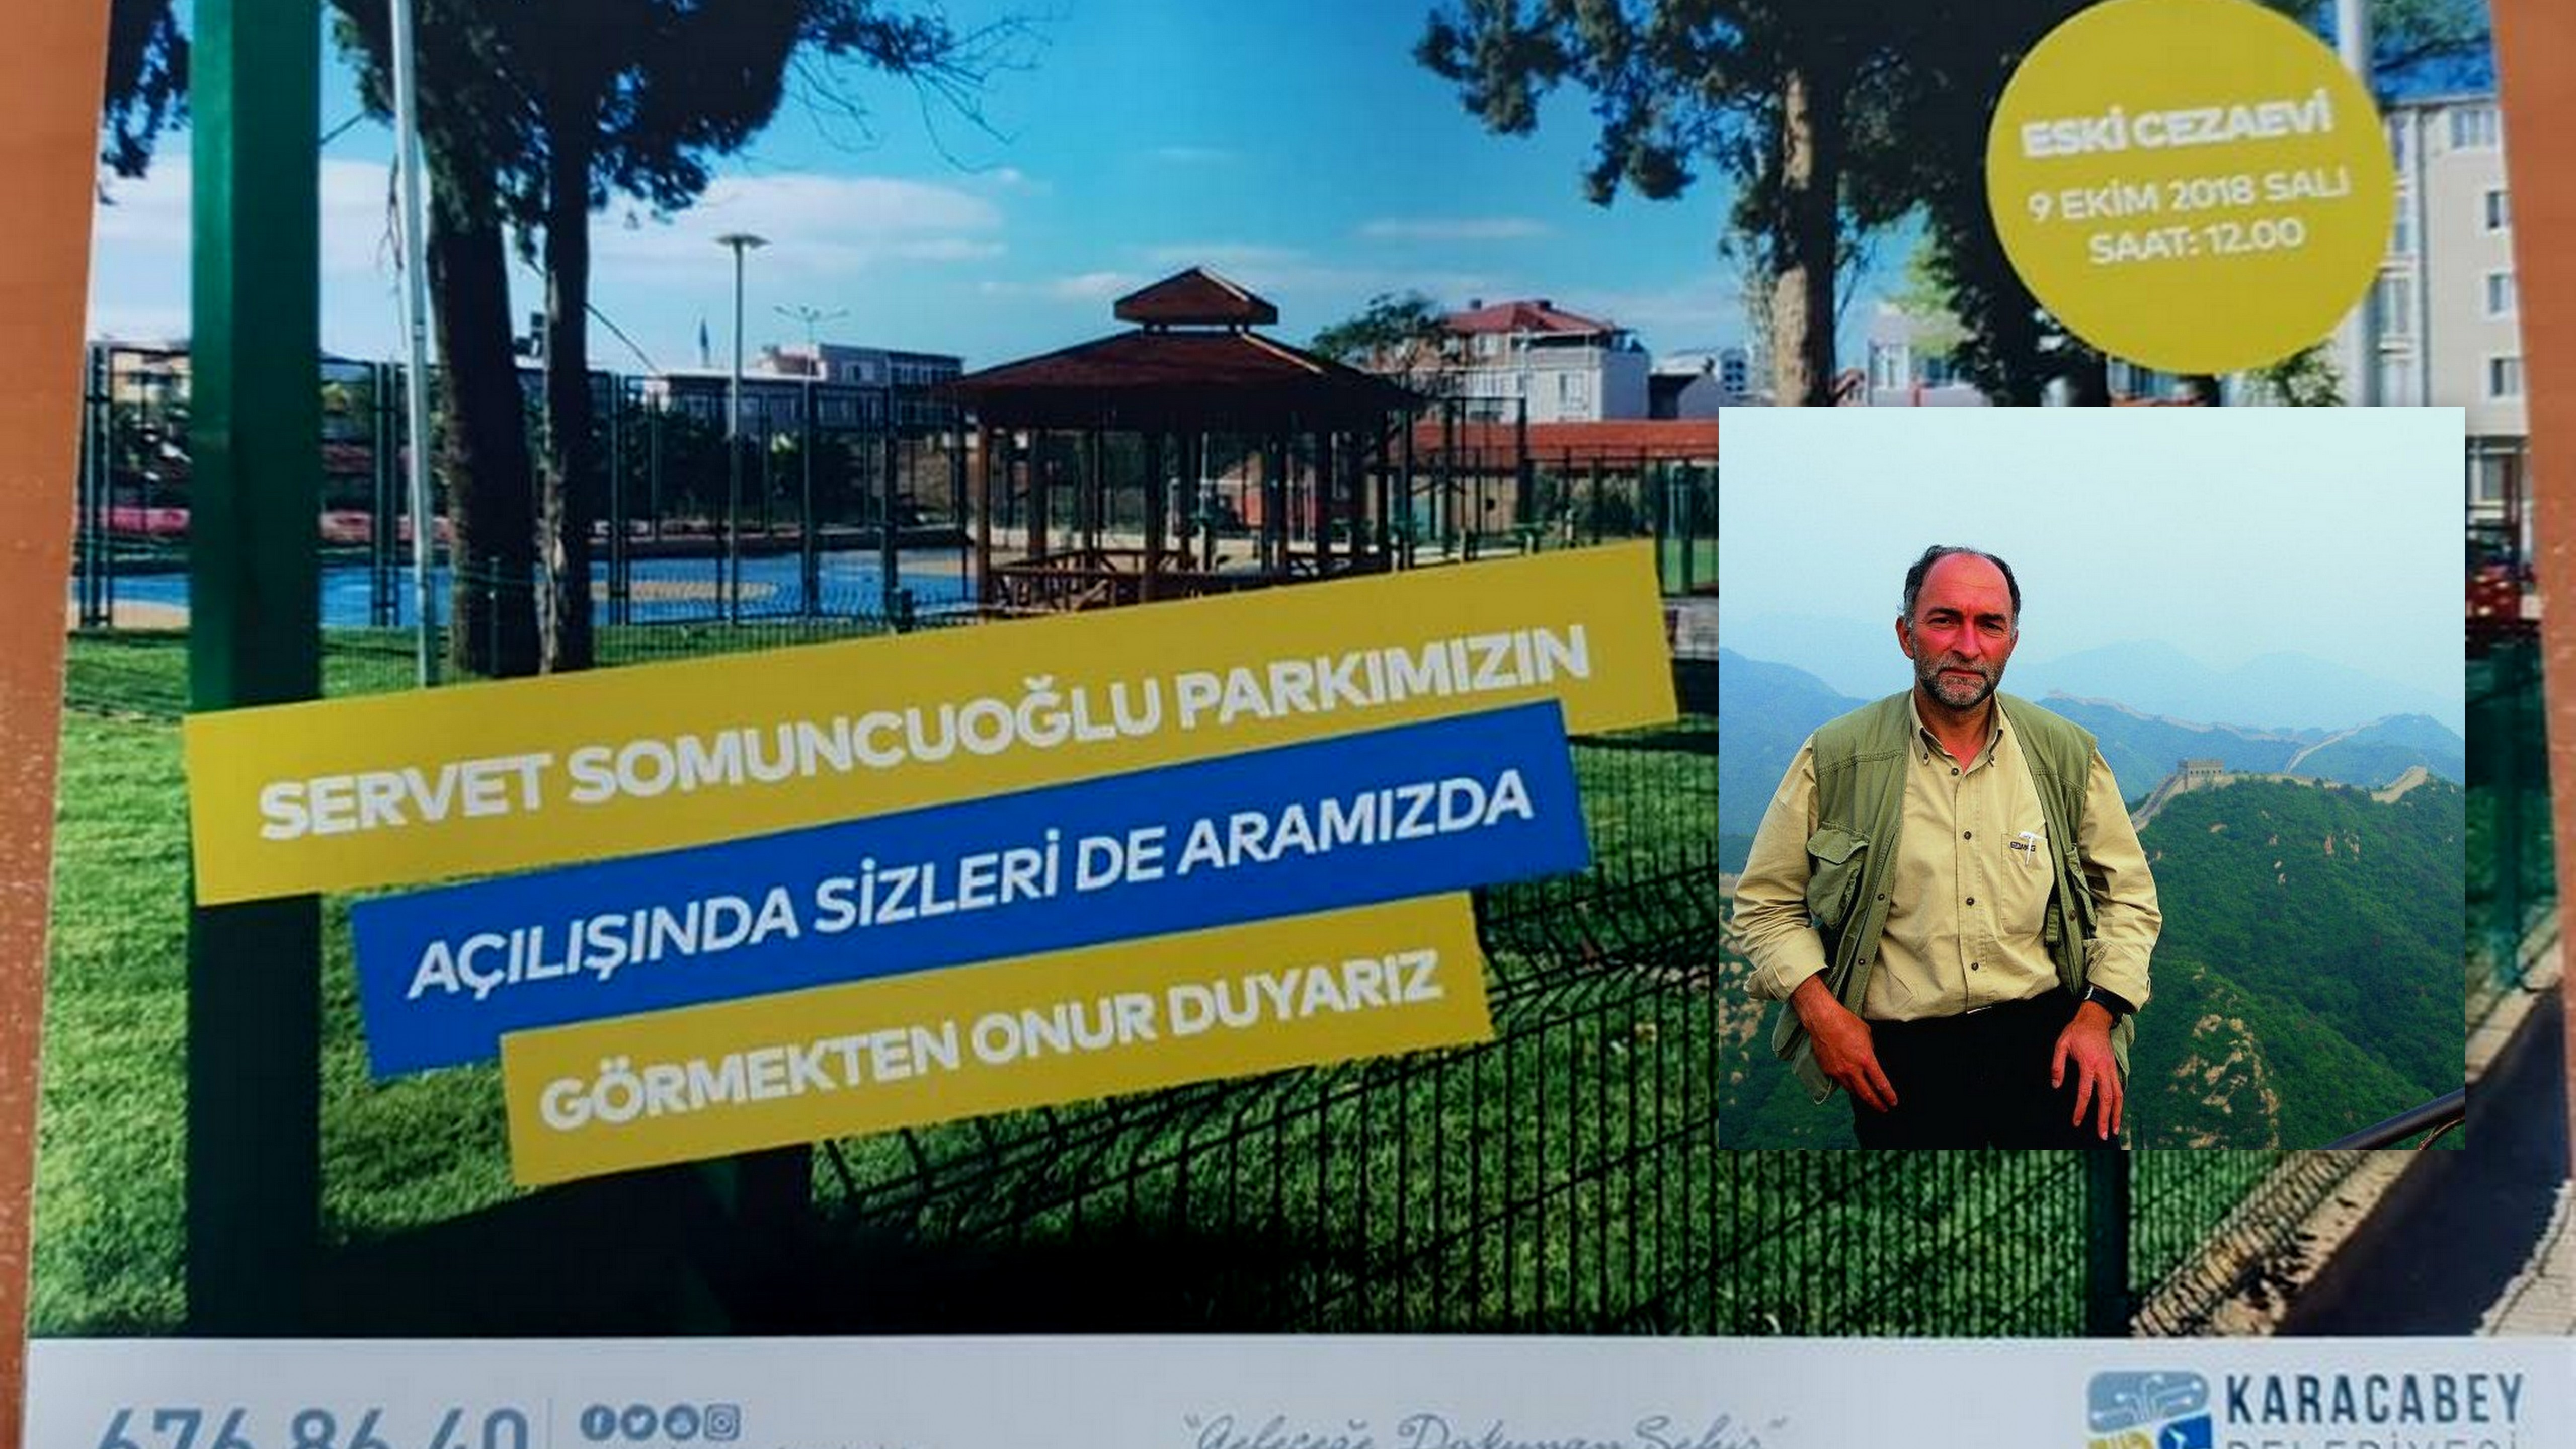 Arifiye Mezunu Servet Somuncuoğlu adına Karacabey’de park açılıyor